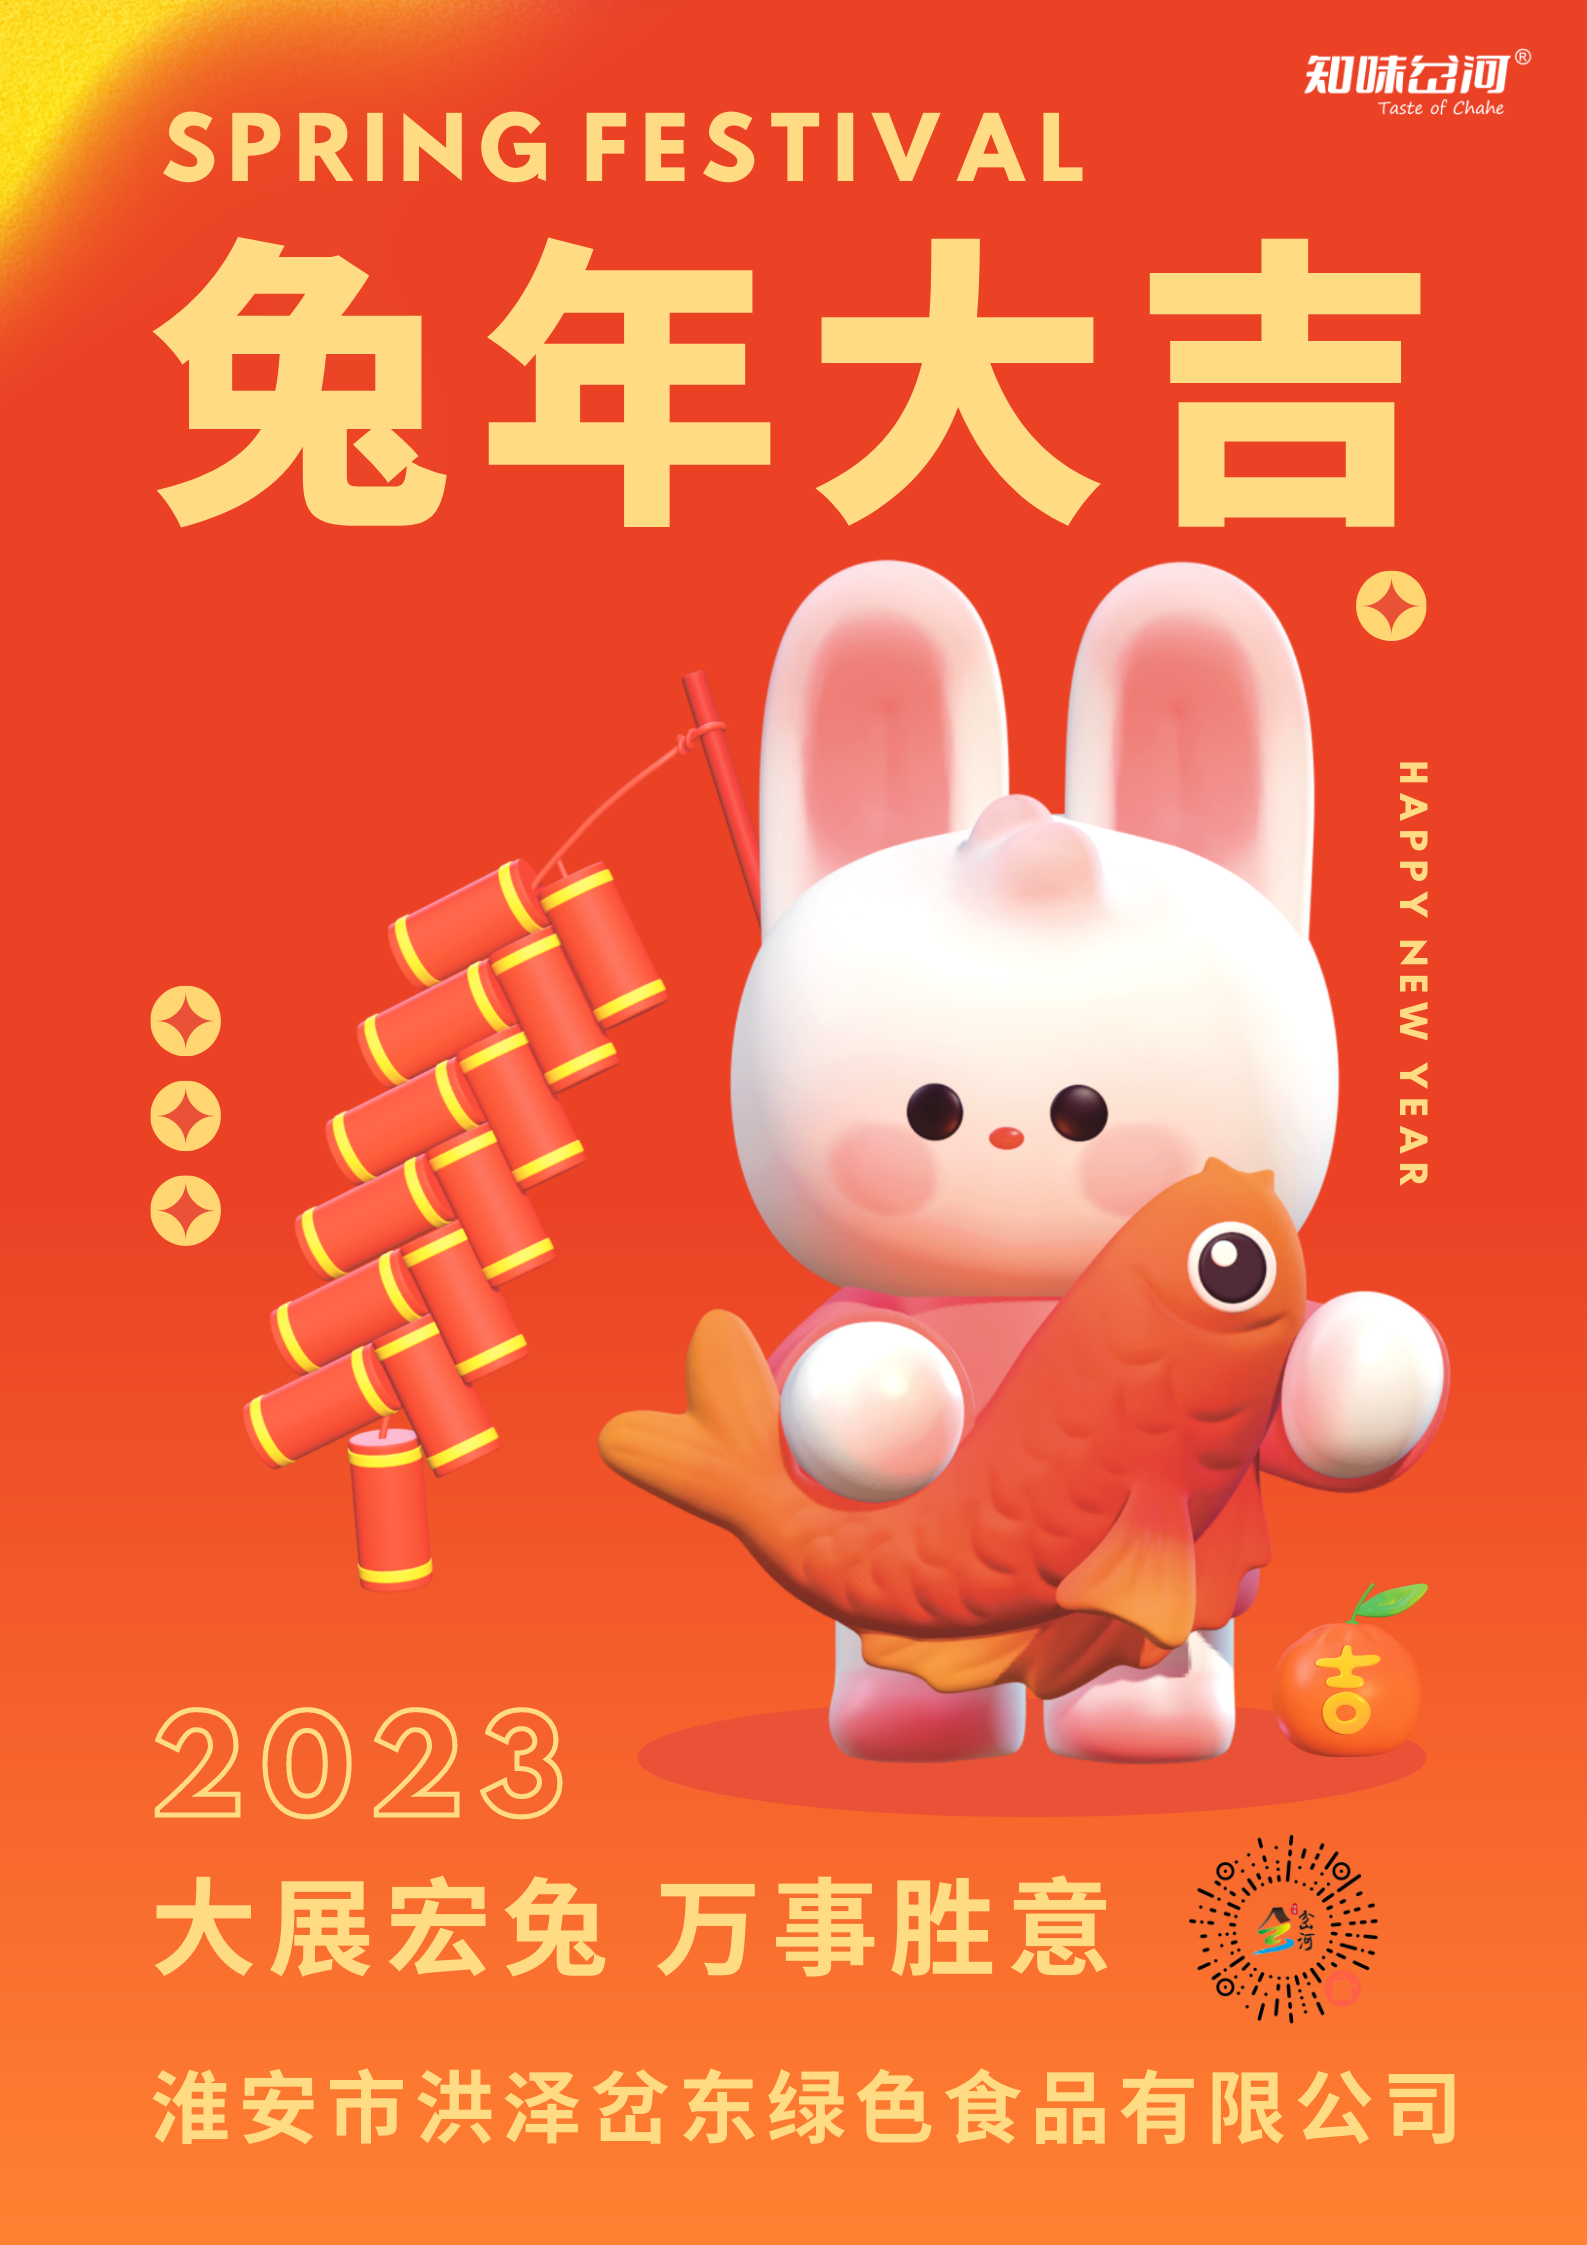 橙紅黃色爆竹兔子3D春節節日宣傳中文海報 (1).png